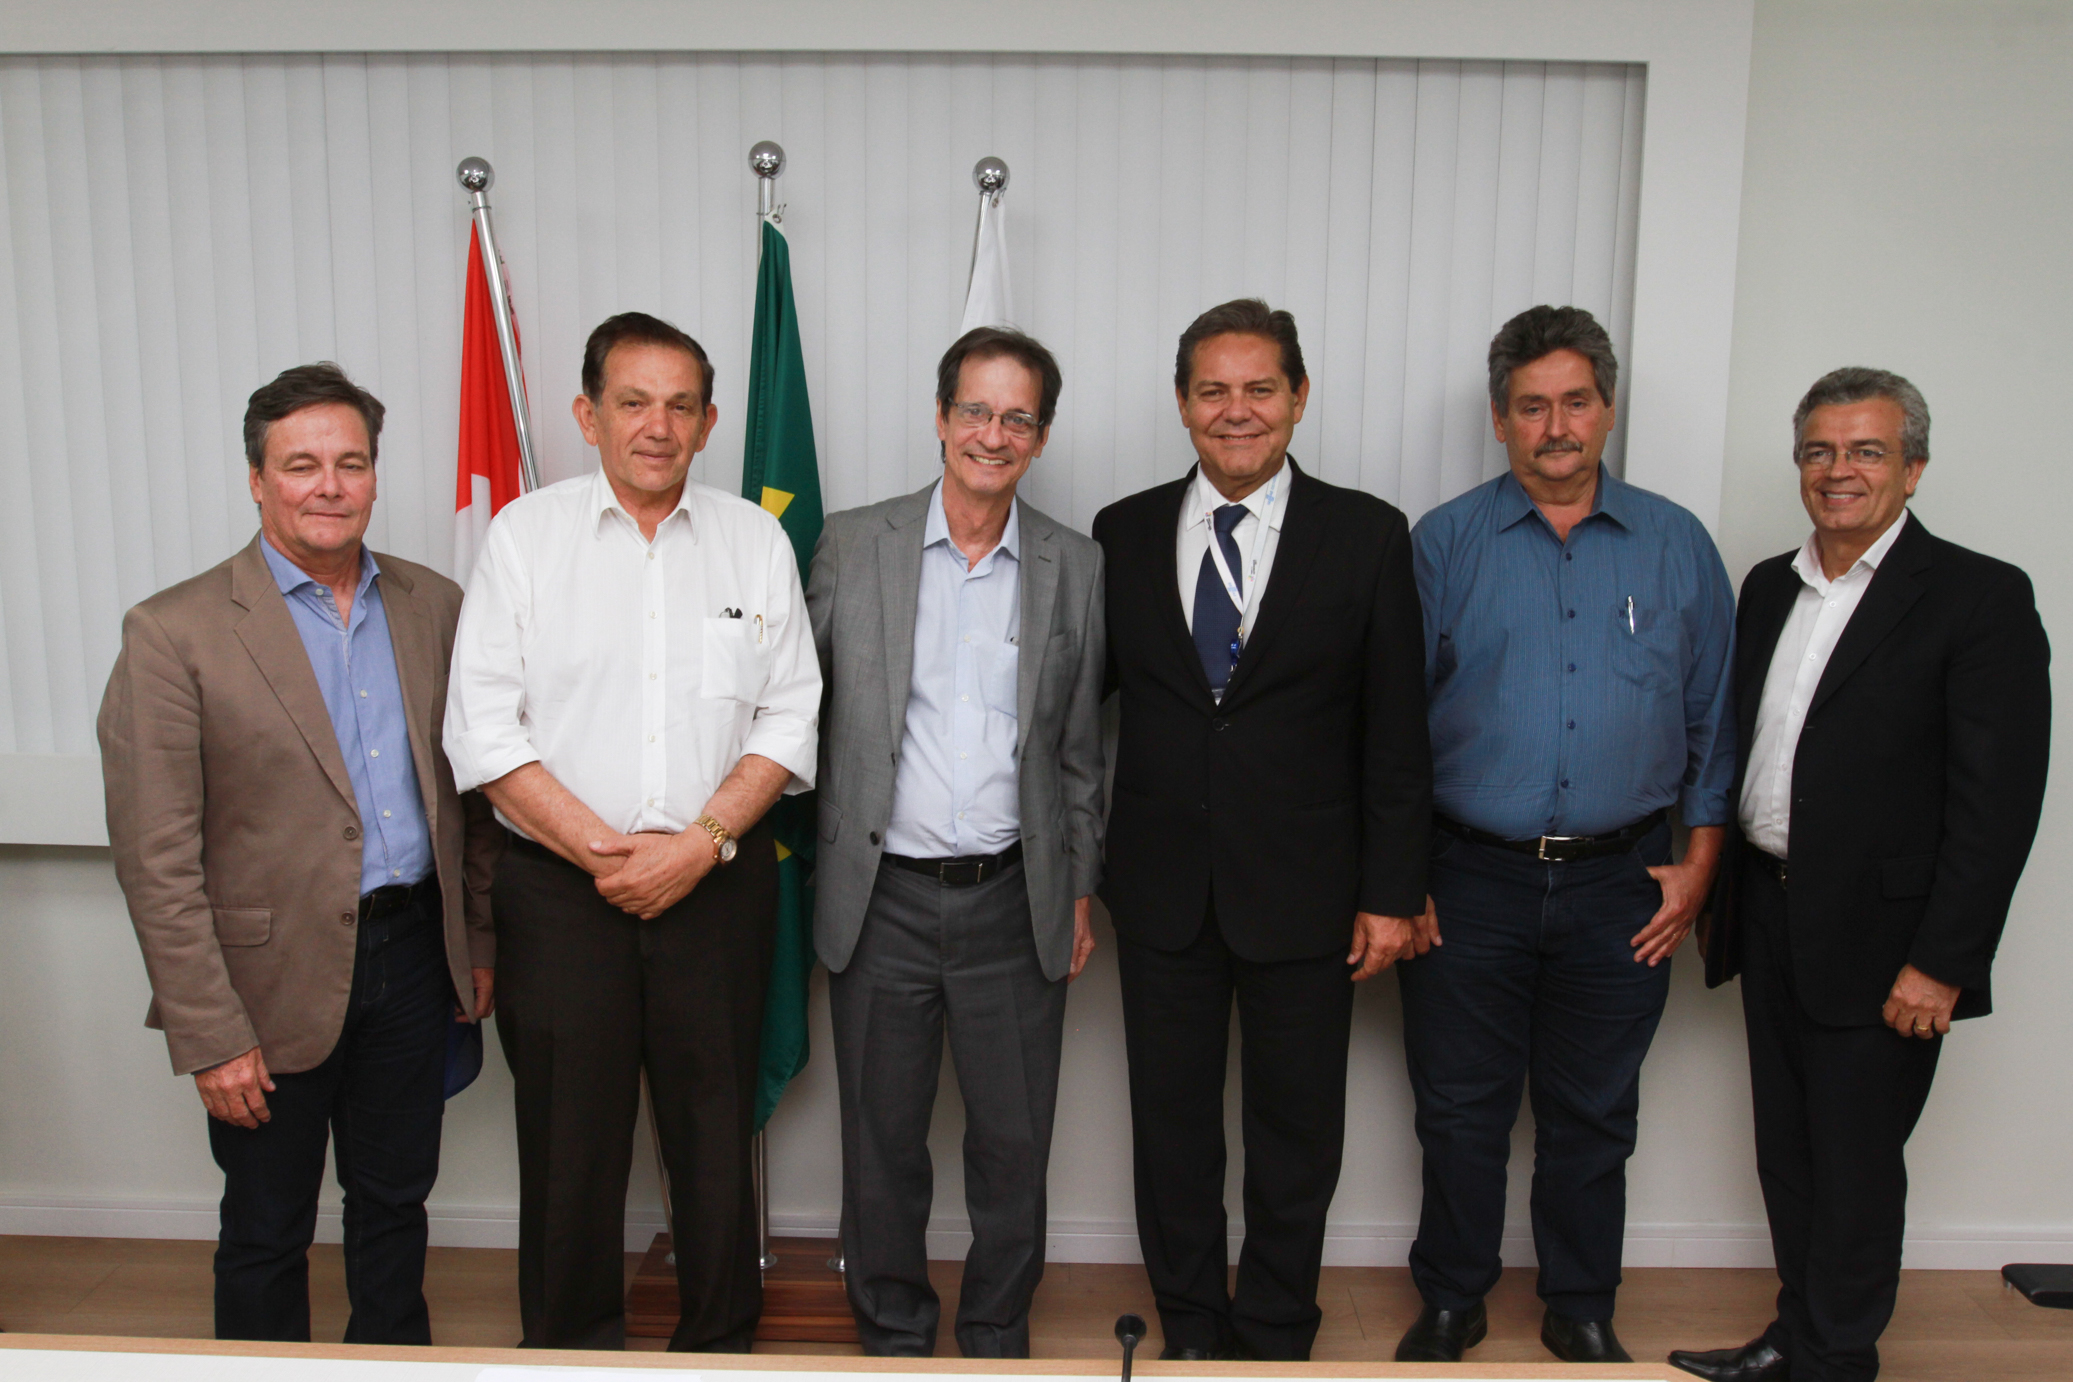 Presidente do CDE e Diretoria Executiva do Sebrae em Alagoas tomam posse no próximo dia 14